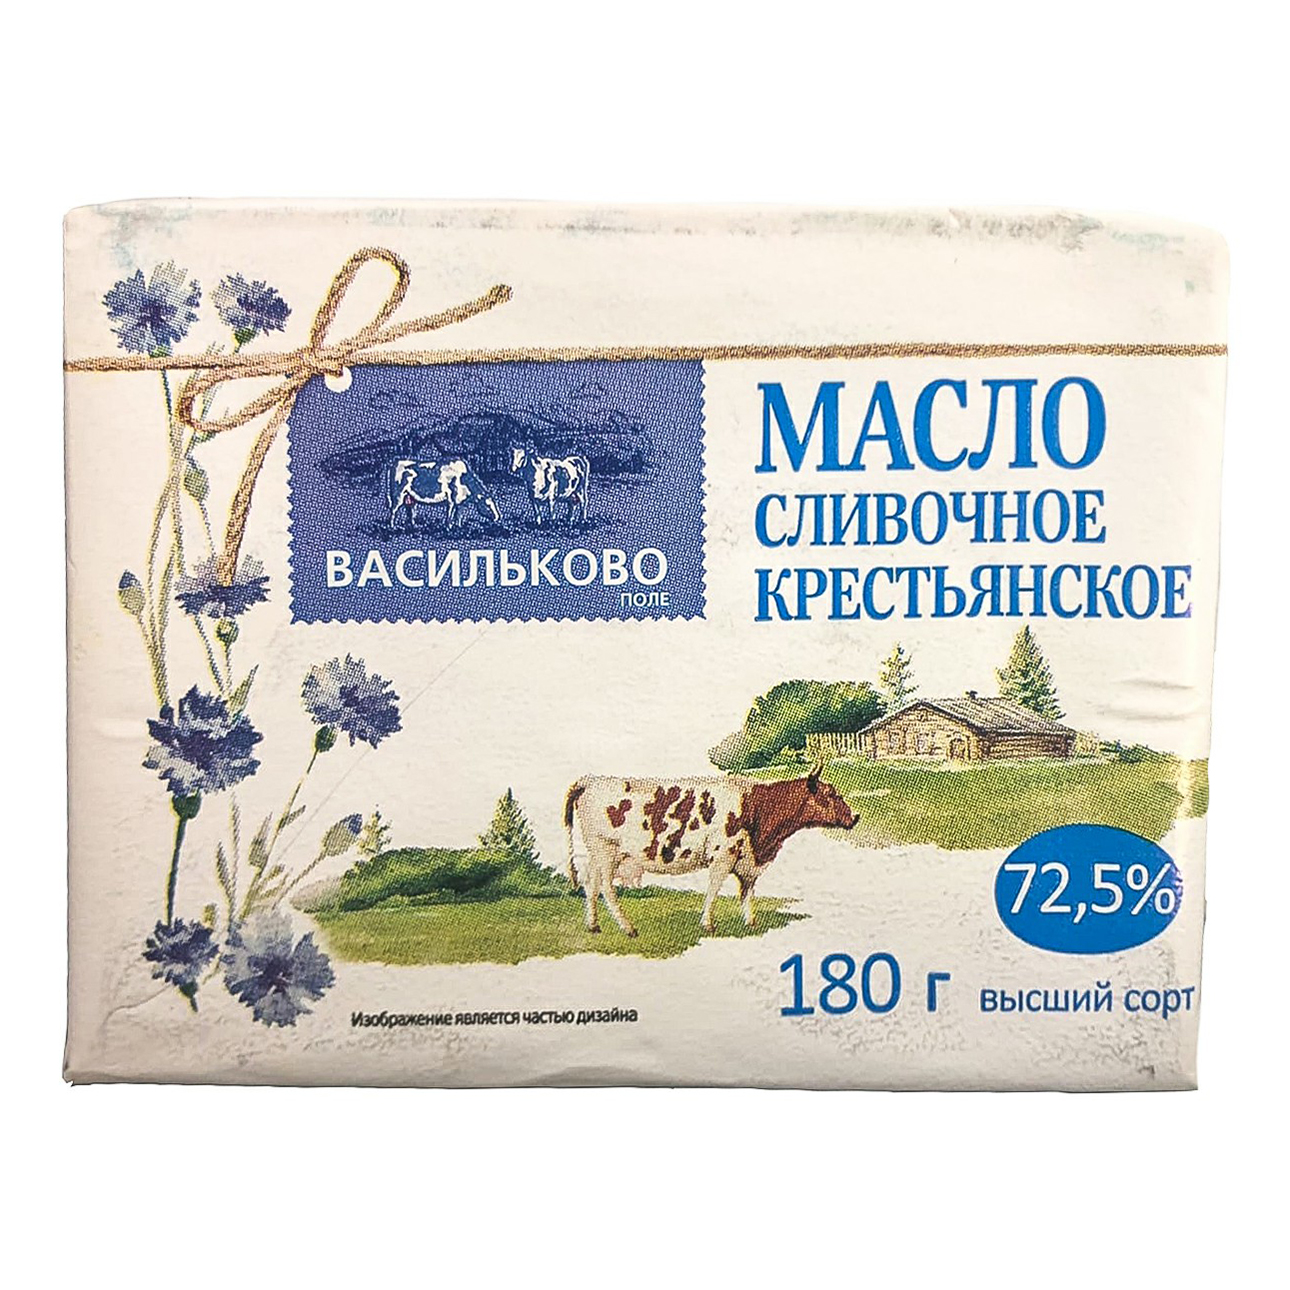 Сливочное масло сладкосливочное Васильково поле Крестьянское 72,5% 180 г